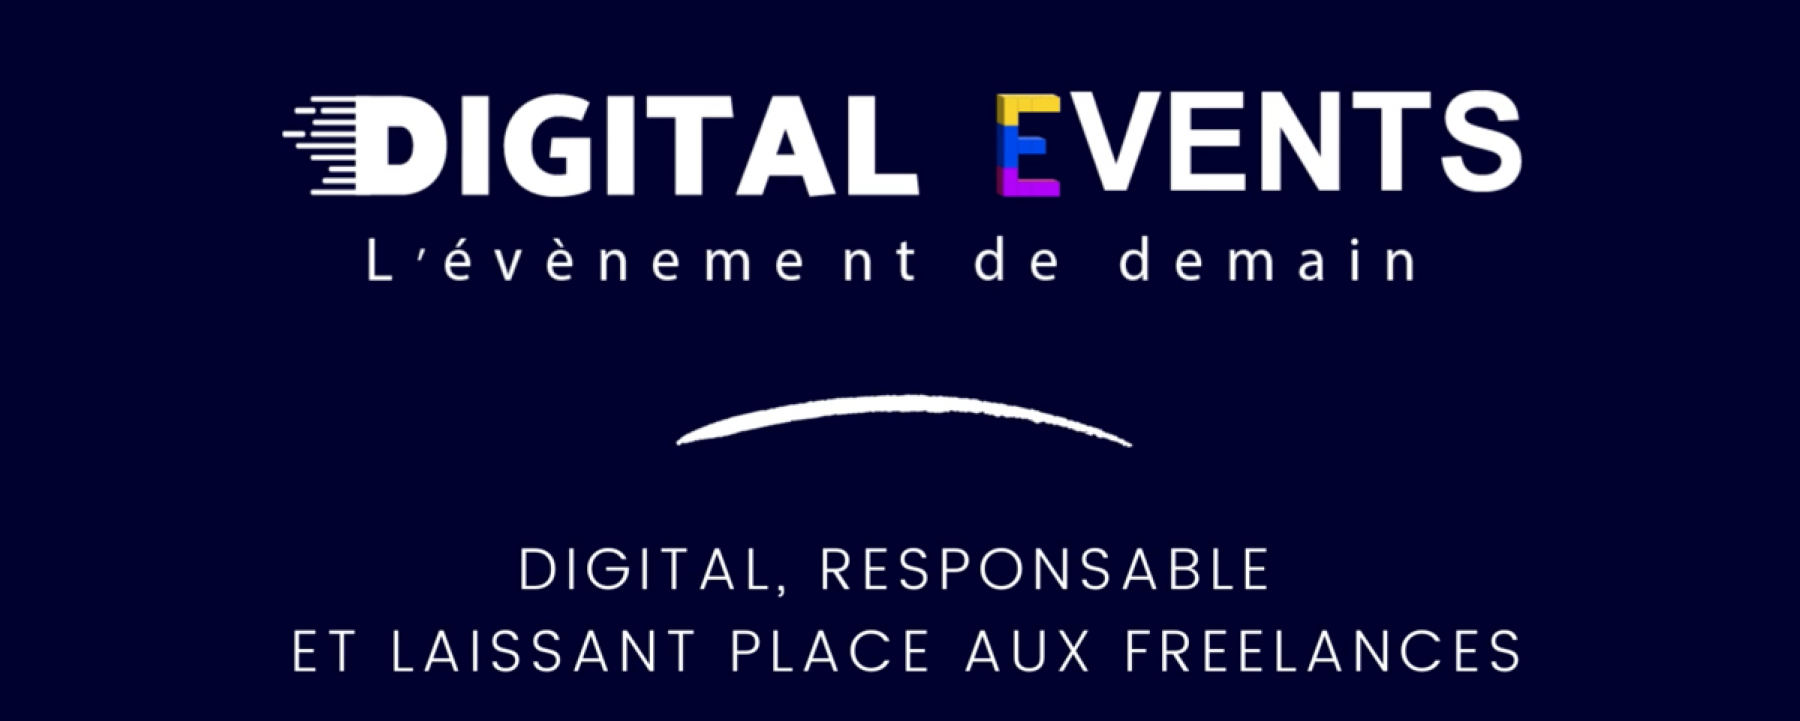 Digital Events : l'événement de demain, un événement en ligne organisé par AppCraft le 28 janvier